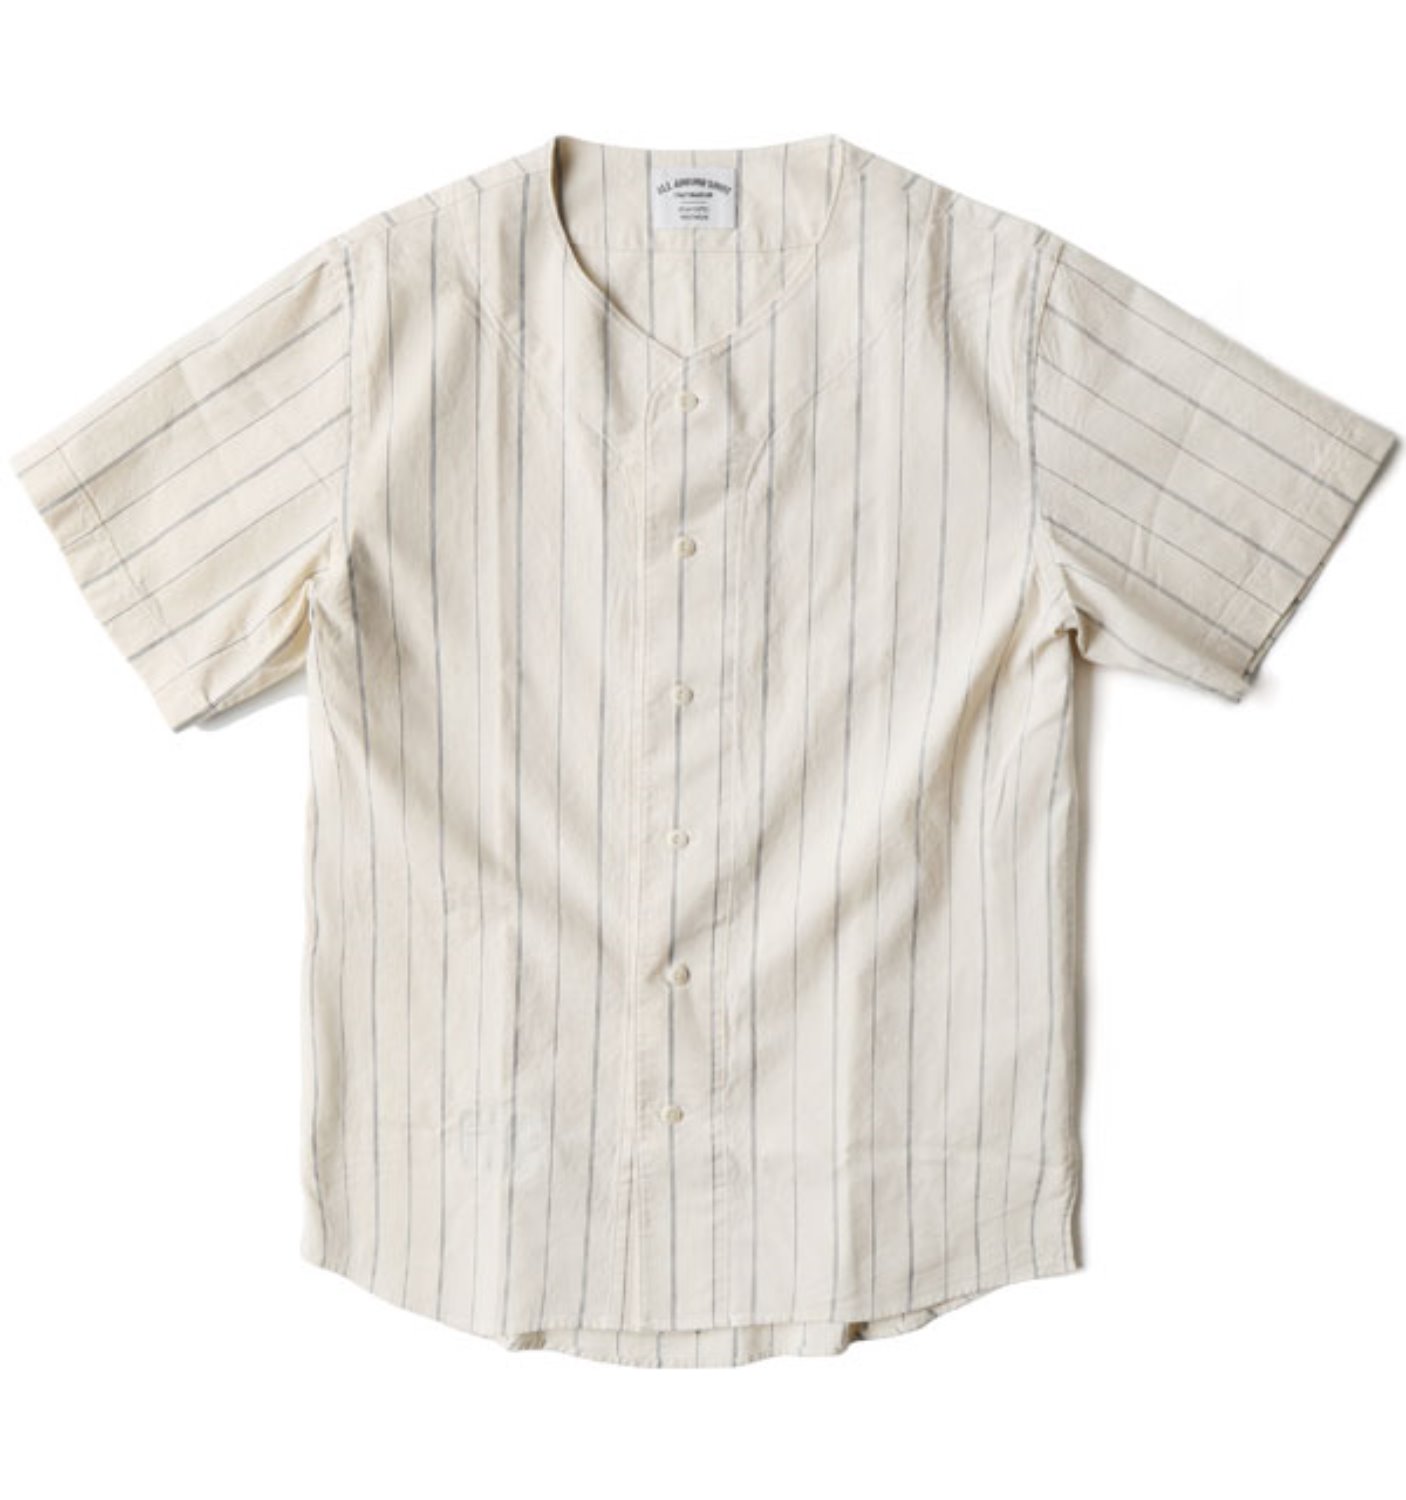 SC-BS01 Baseball Shirt NAVY (Sculp Exclusive)